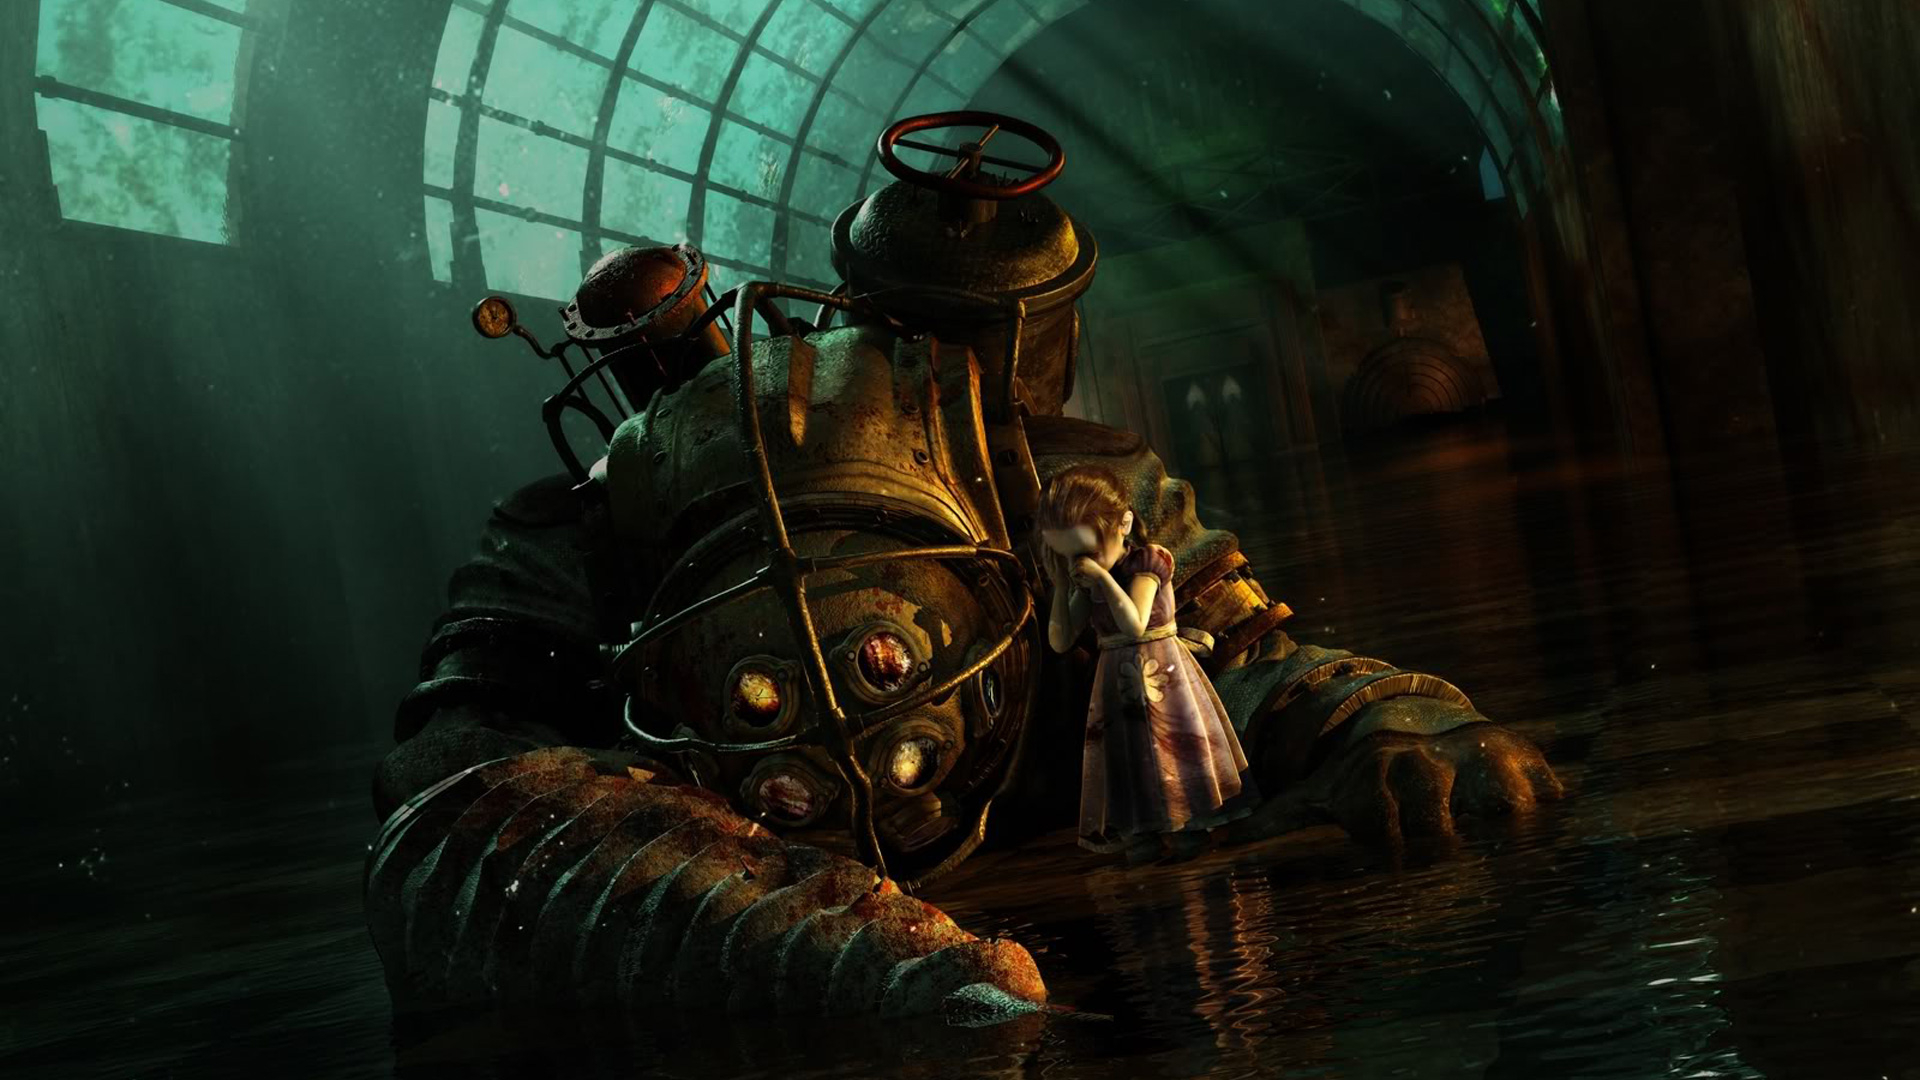 Bioshock 4 jako RPG? Przecieki sugerują zmiany w serii